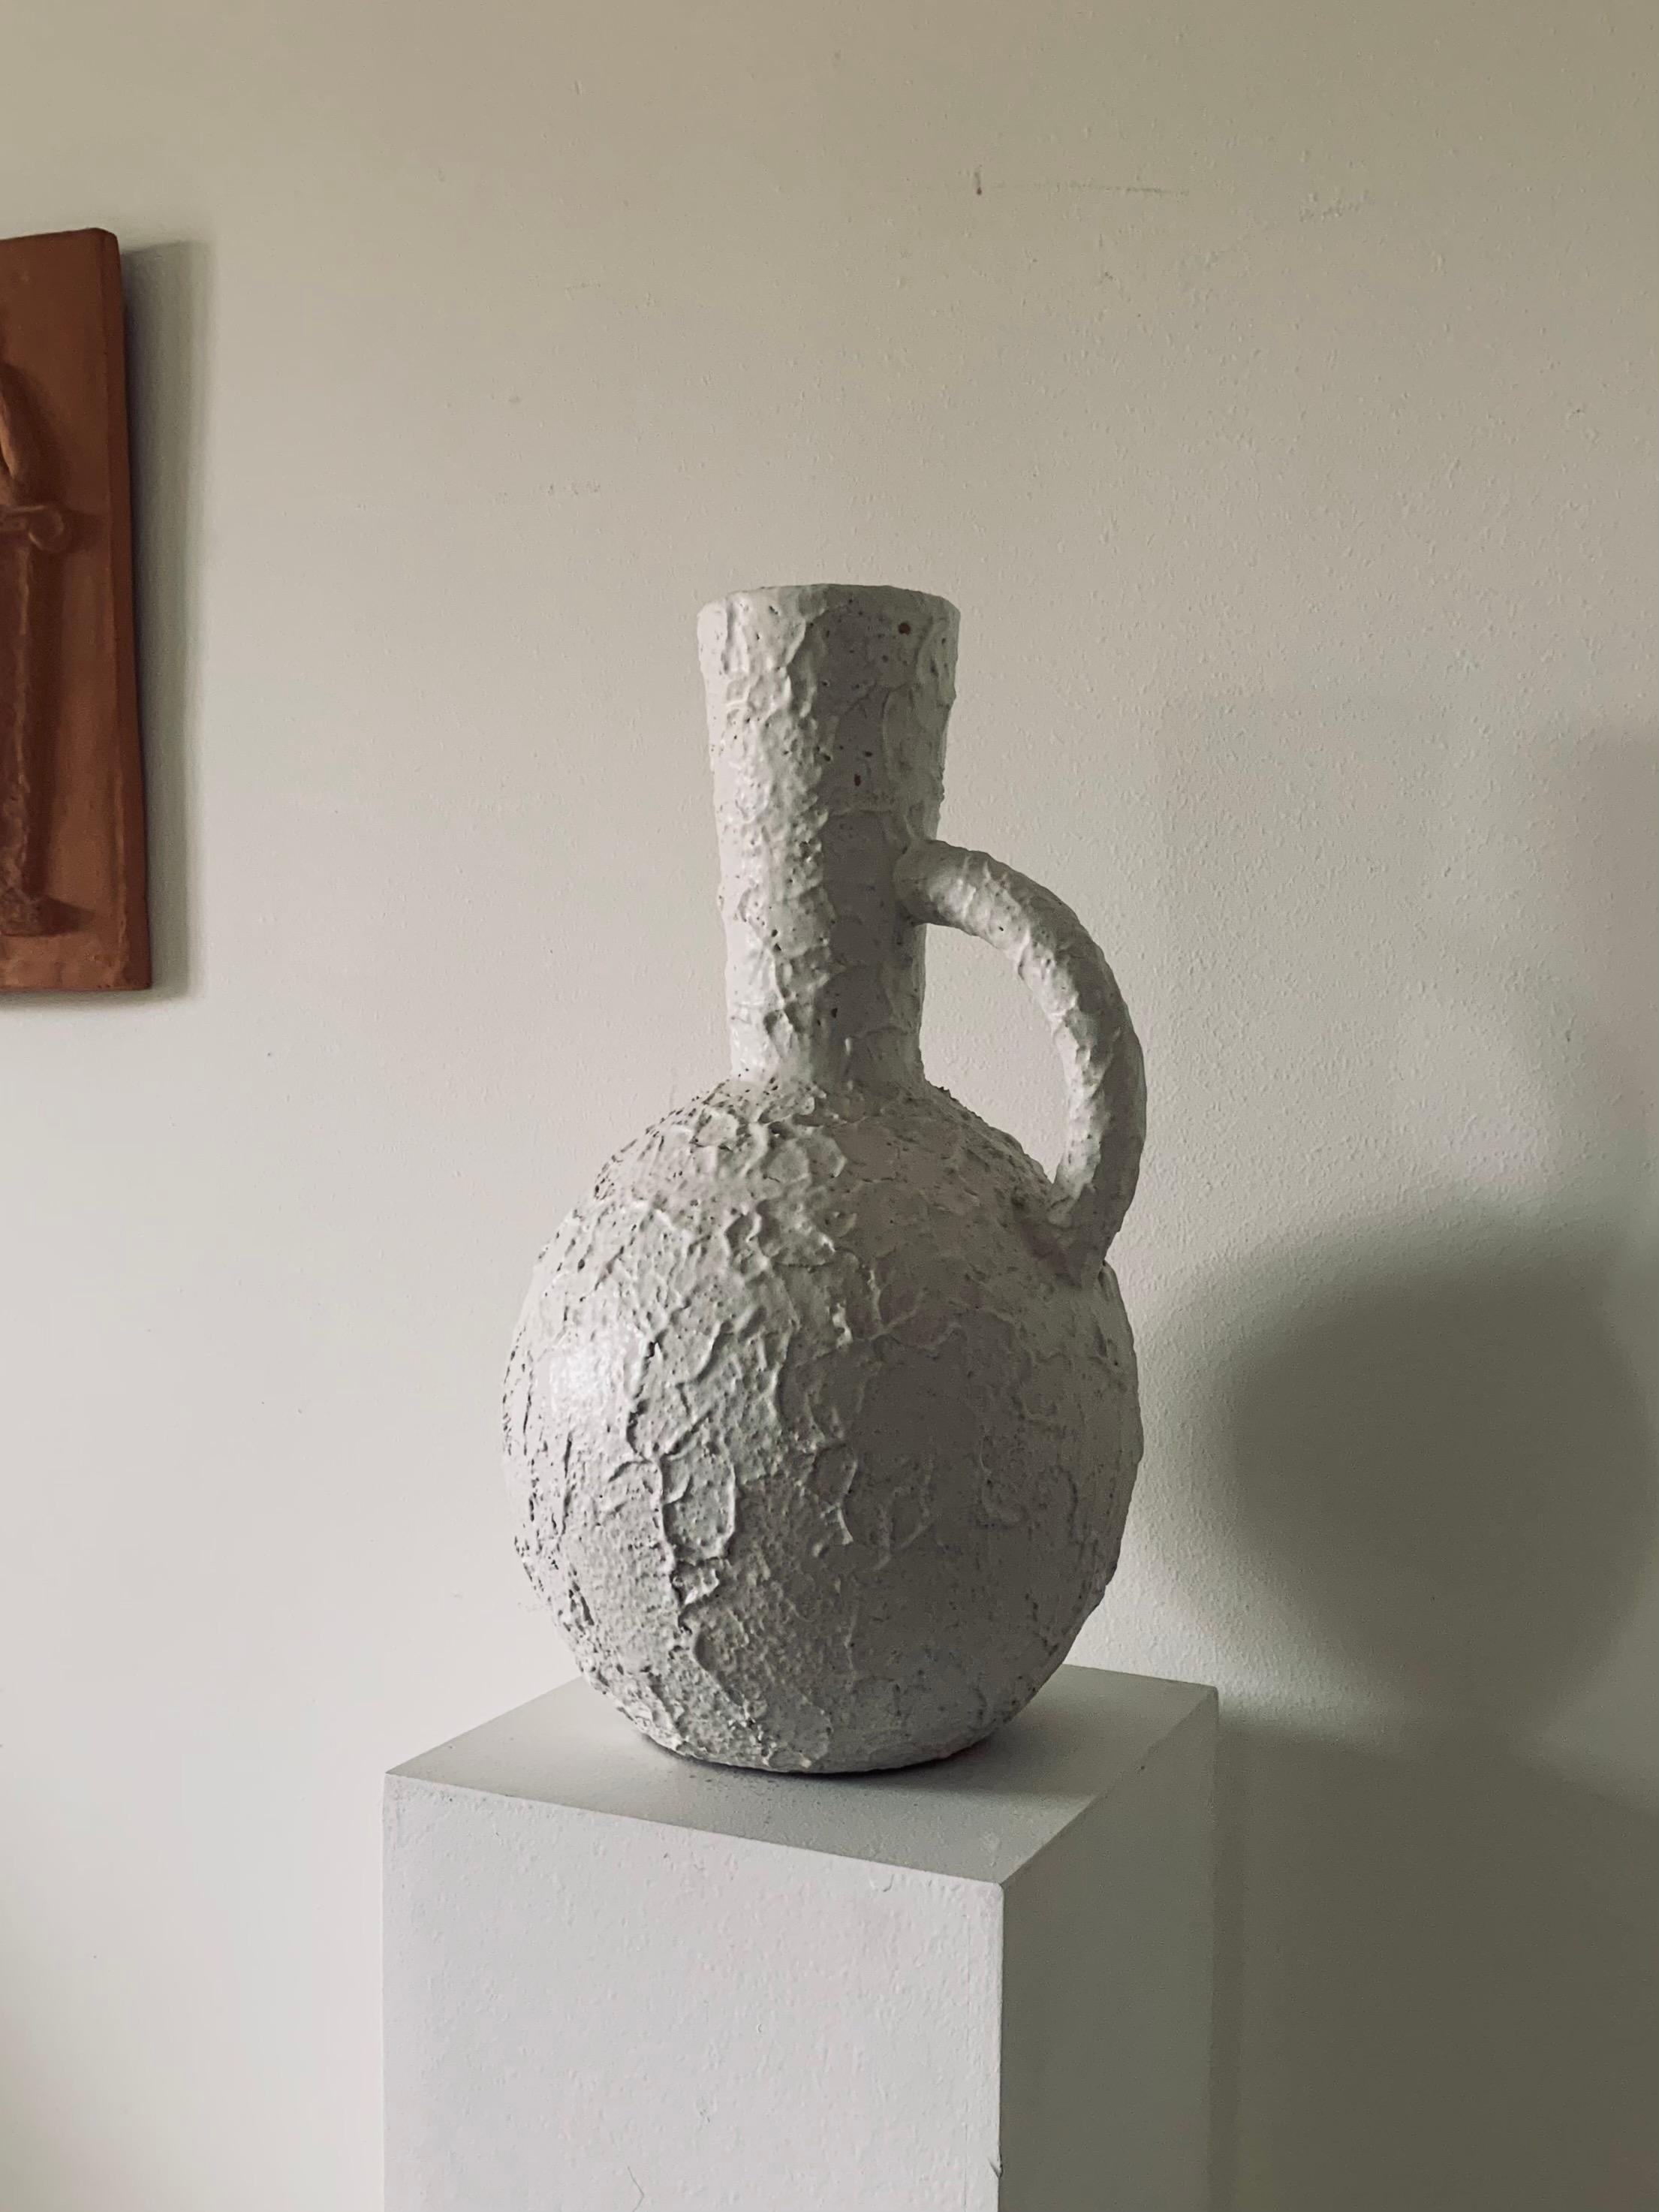 Grand vase de sol sculptural à surface texturée conçu par John Andersson pour Andersson & Johansson Höganäs dans les années 1950. Fabriqué à la main à Höganäs en Suède. Fabriqué en faïence avec une glaçure blanche à texture mate. Très bon état avec